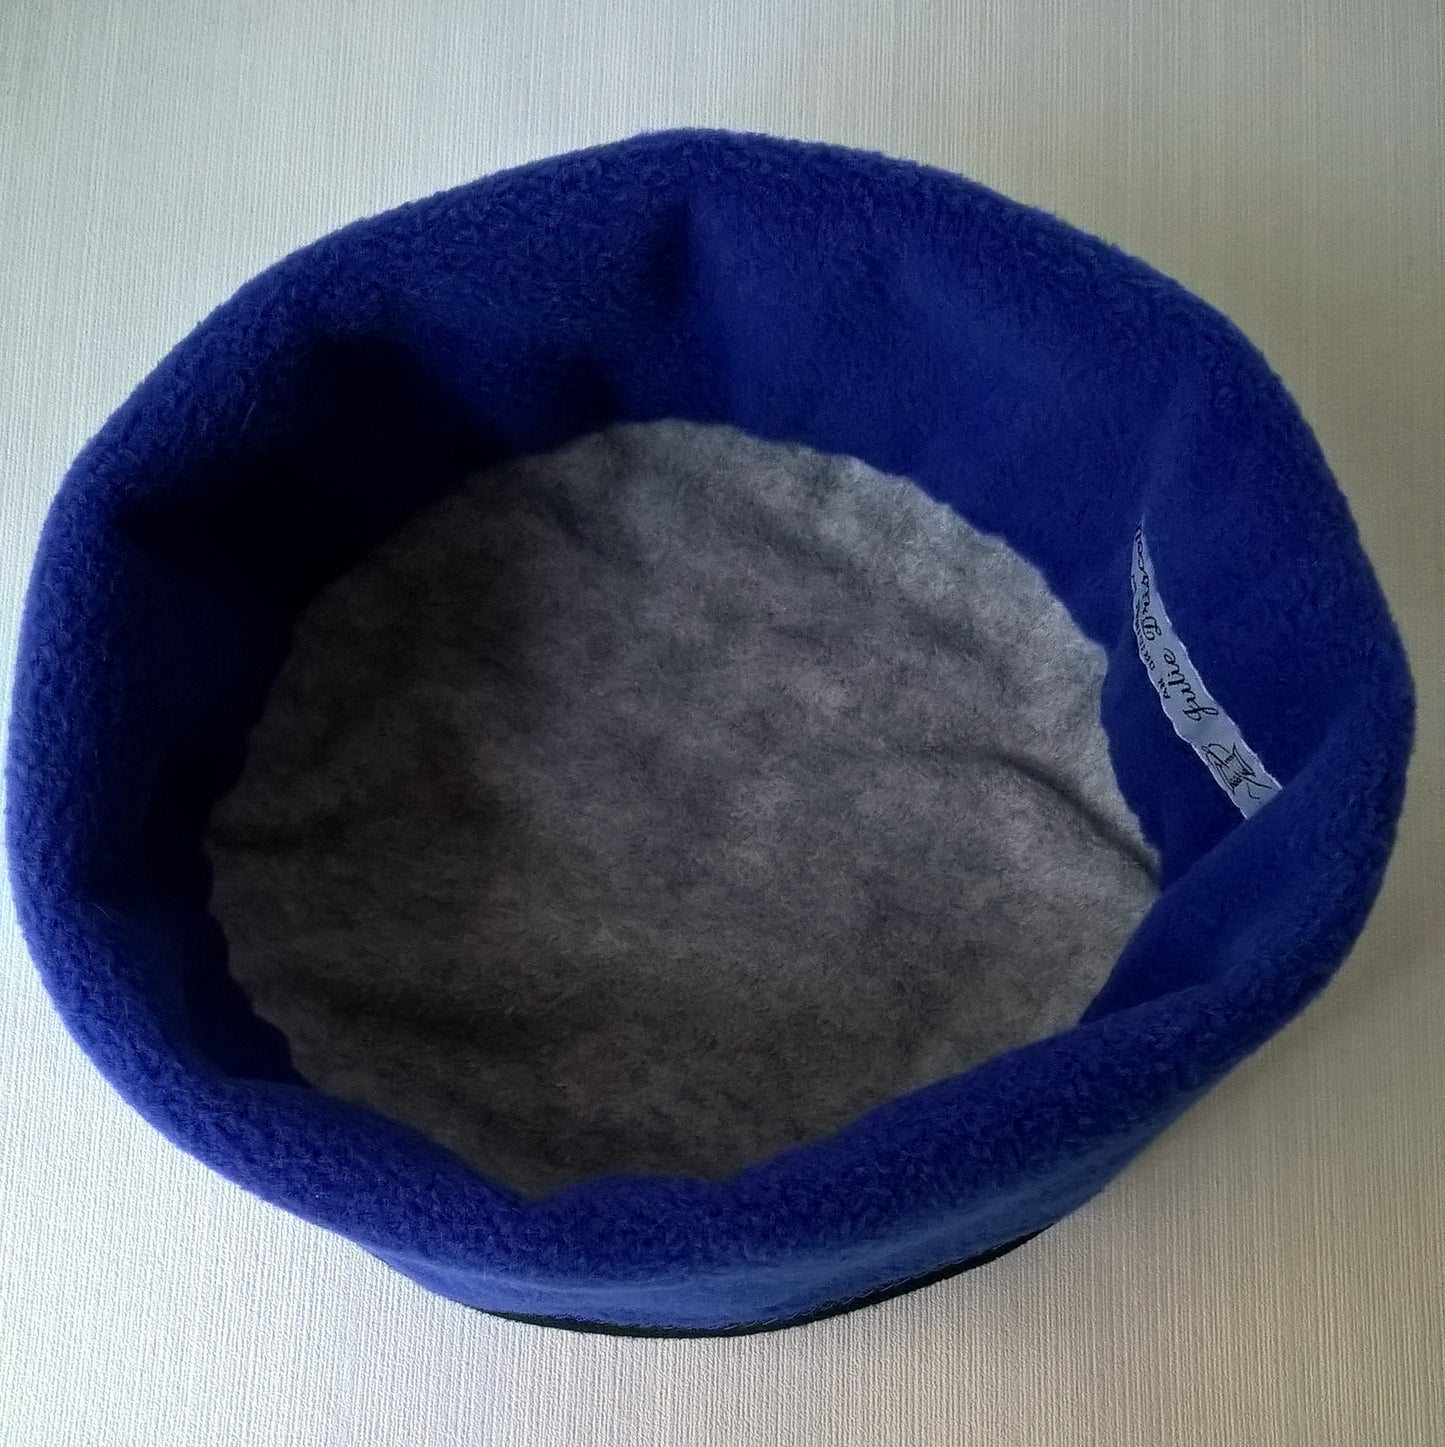 The cobalt blue hat has a grey fleece lining